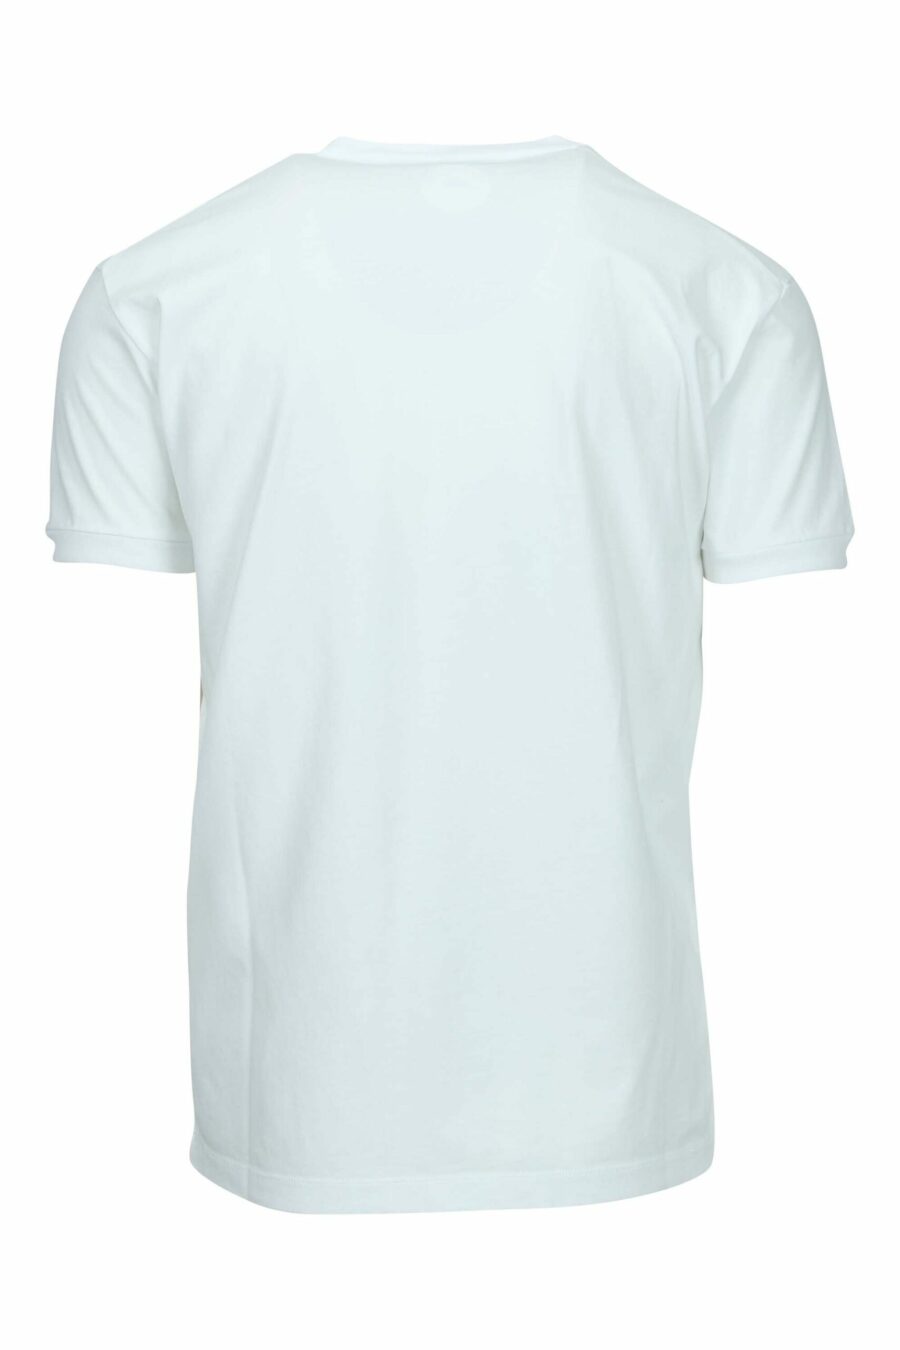 T-shirt branca com maxilogo de graffiti multicolorido - 8054148570620 1 scaled